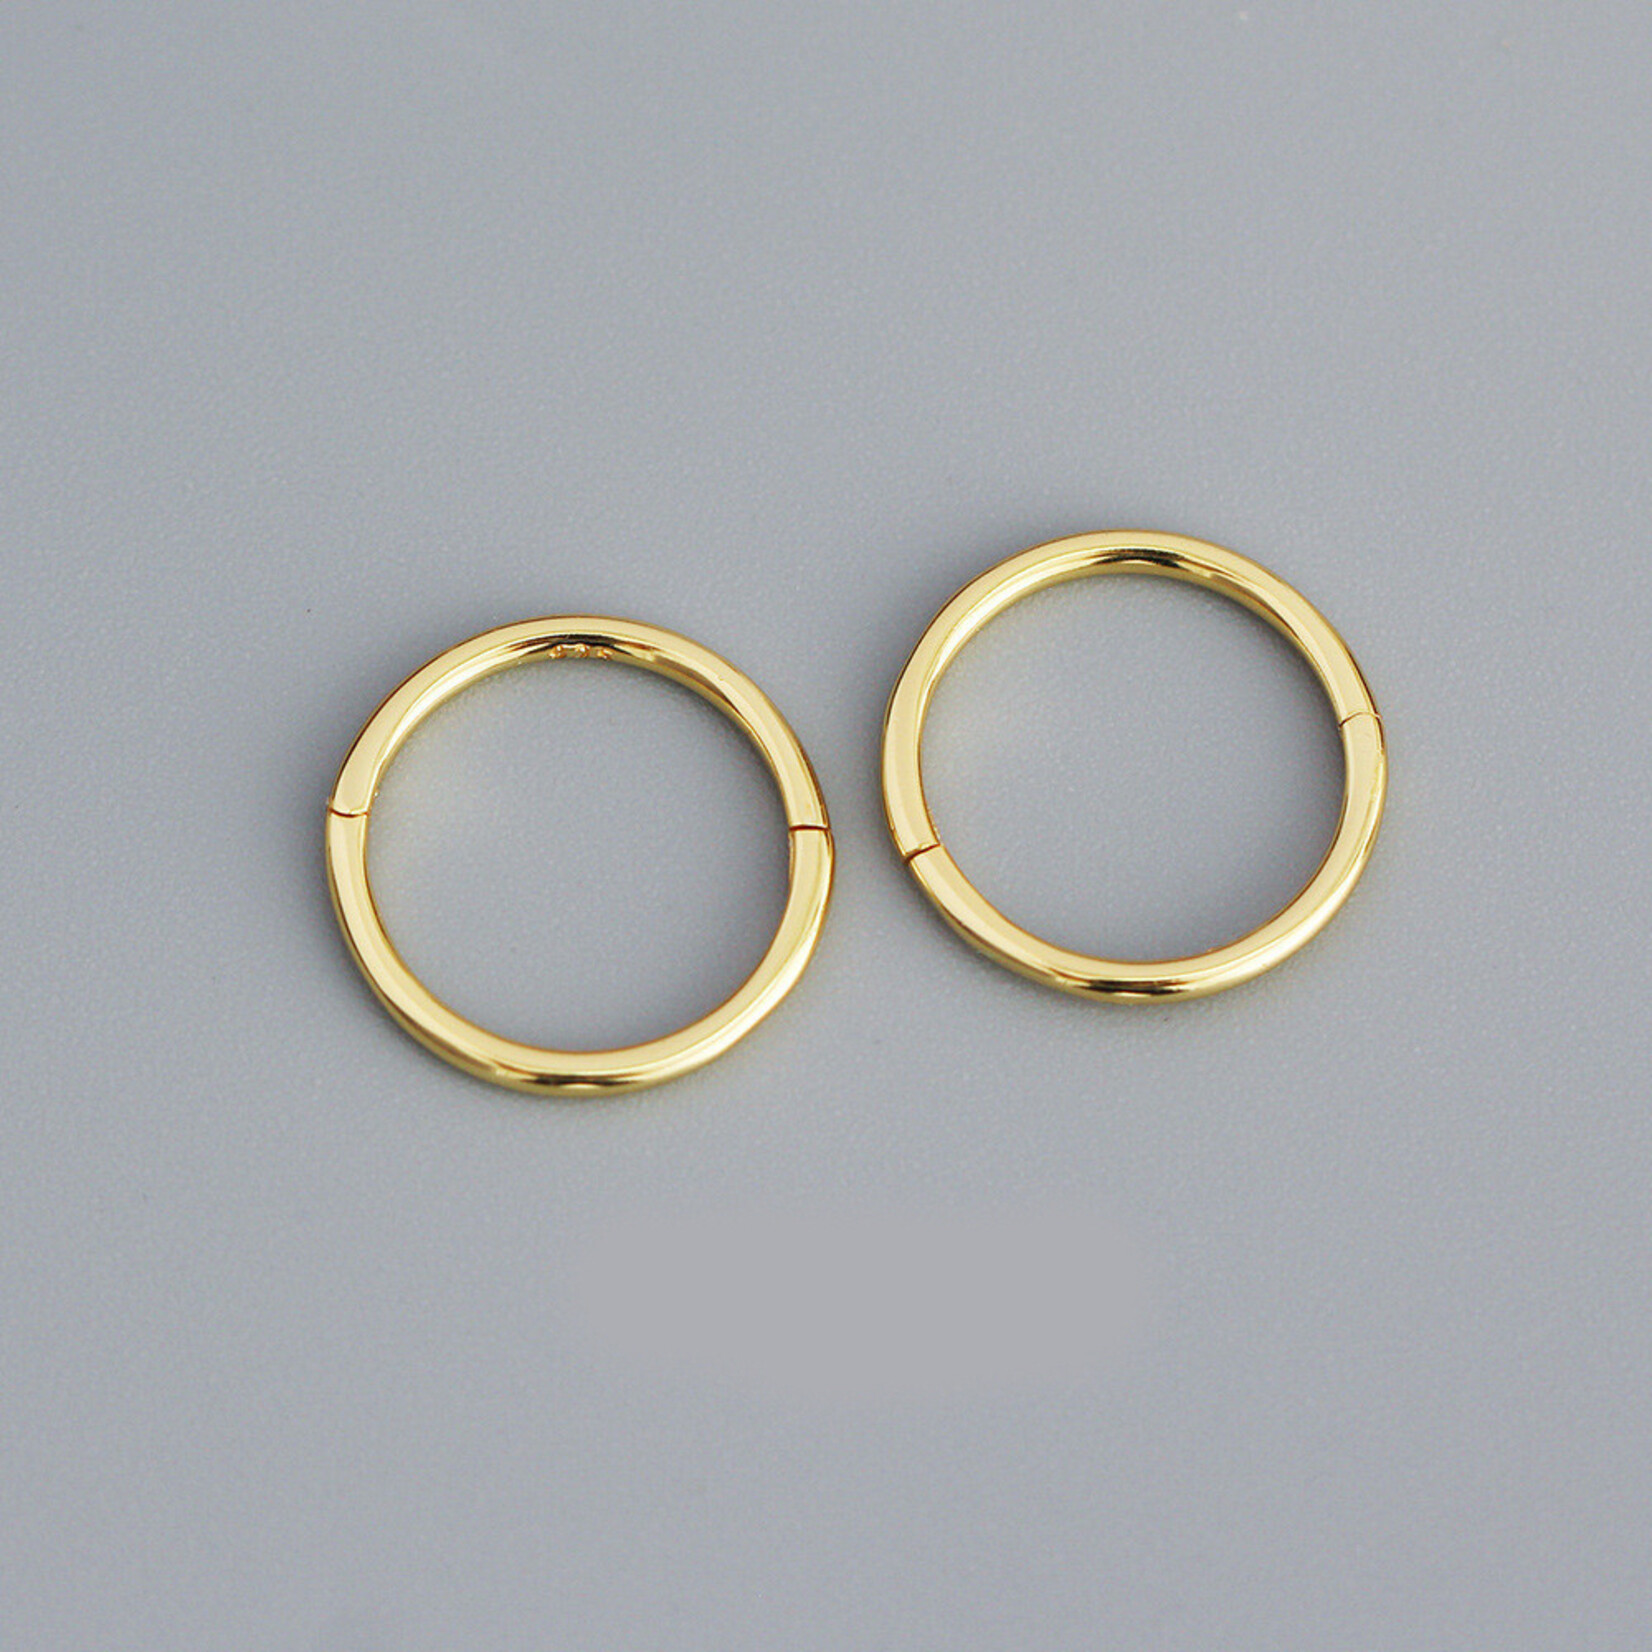 Carriez 925 zilver goud vergulde piercing oorringen 12 mm